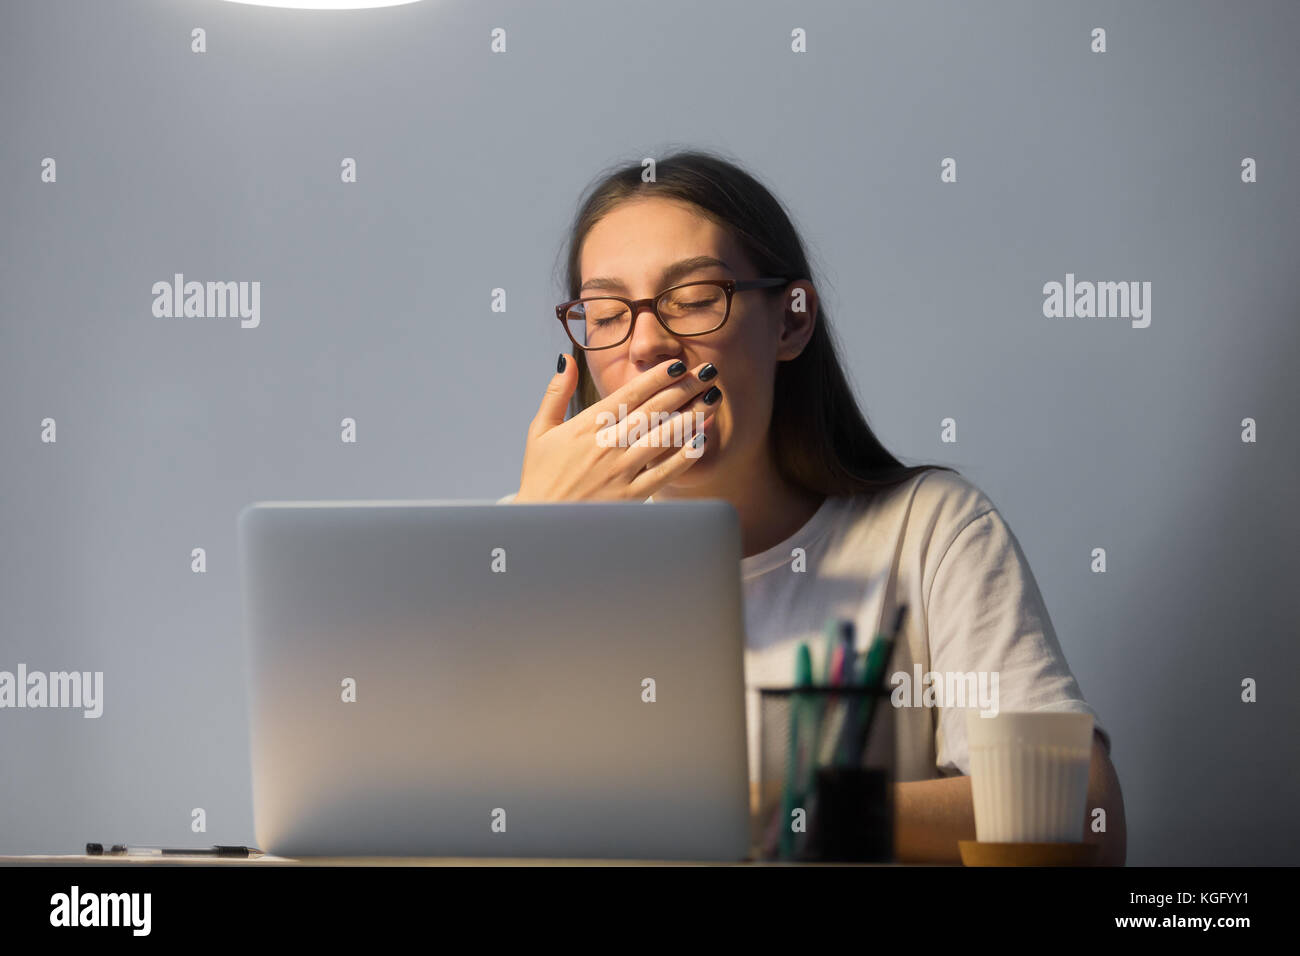 Müde junge erwachsene Frau Sekretär in Gläsern funktioniert auf dem Laptop Computer am Arbeitsplatz Schreibtisch spät in der Nacht, Gähnen, deckt den Mund mit der Hand. Stockfoto